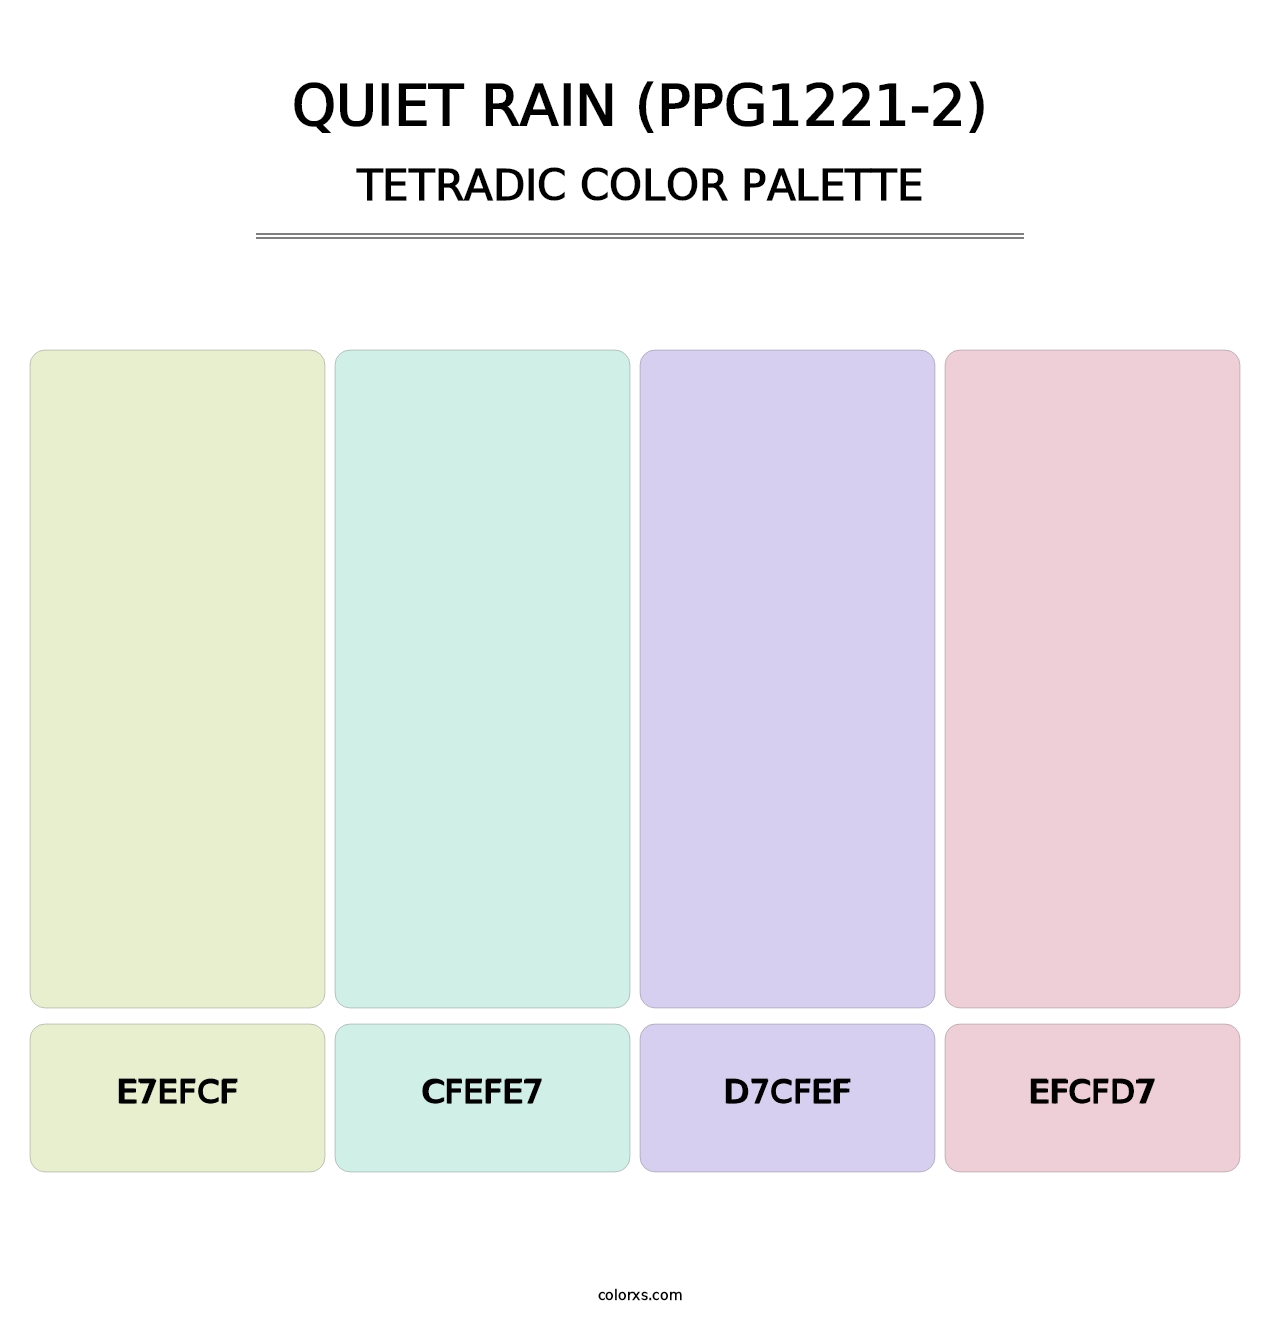 Quiet Rain (PPG1221-2) - Tetradic Color Palette